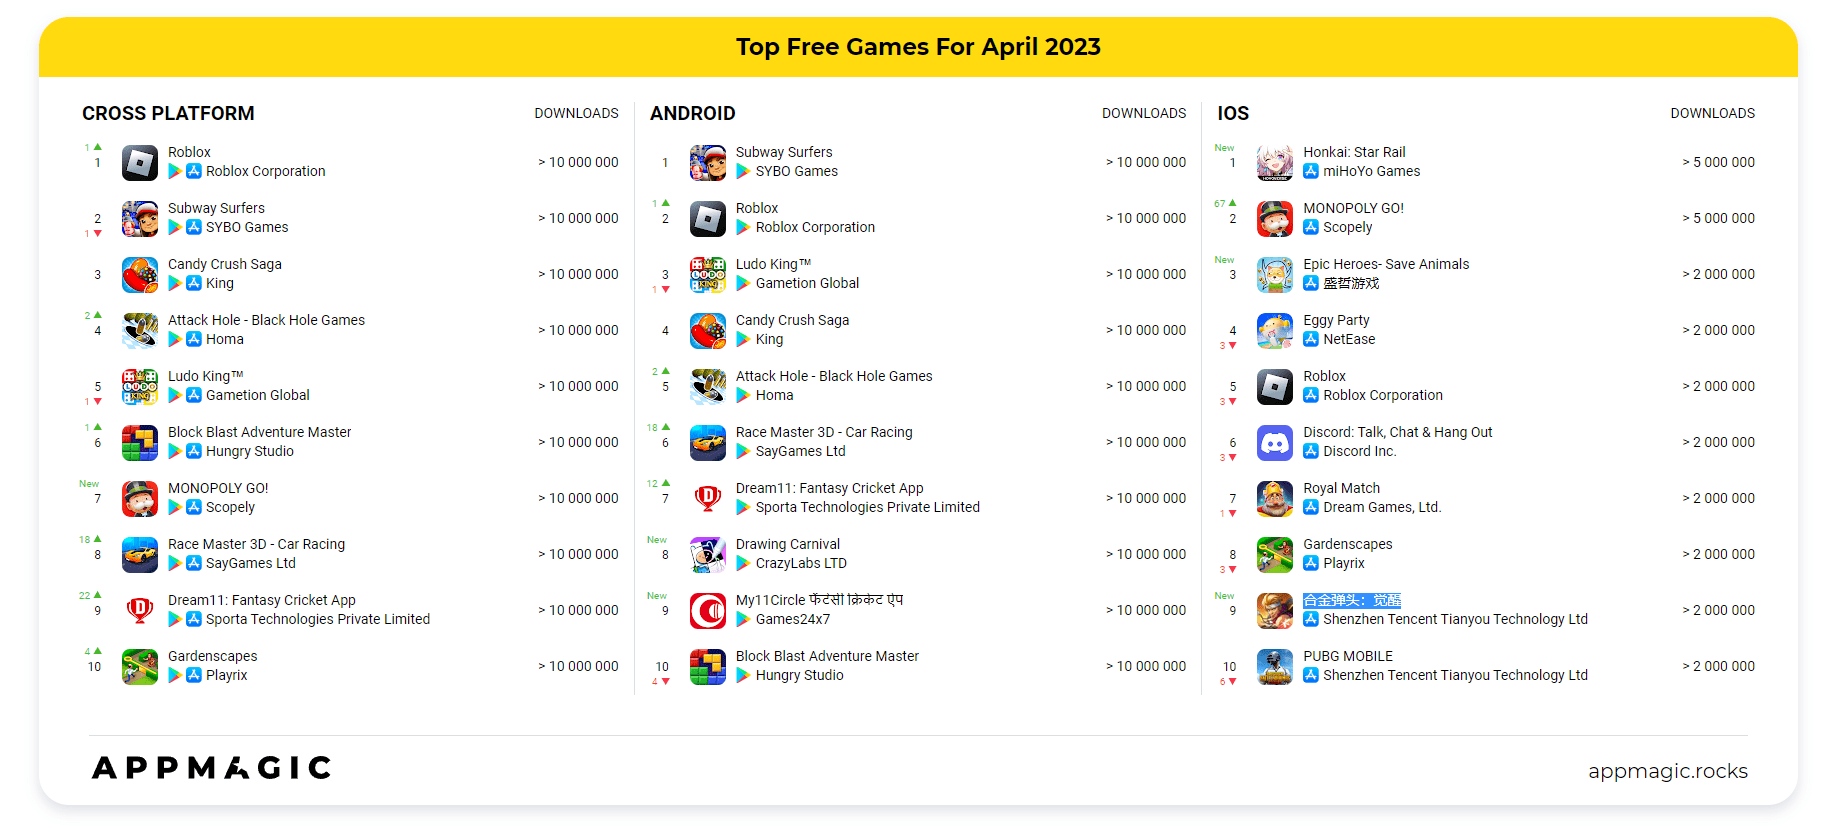 Danh sách game mobile được download nhiều nhất tháng 4/2023.